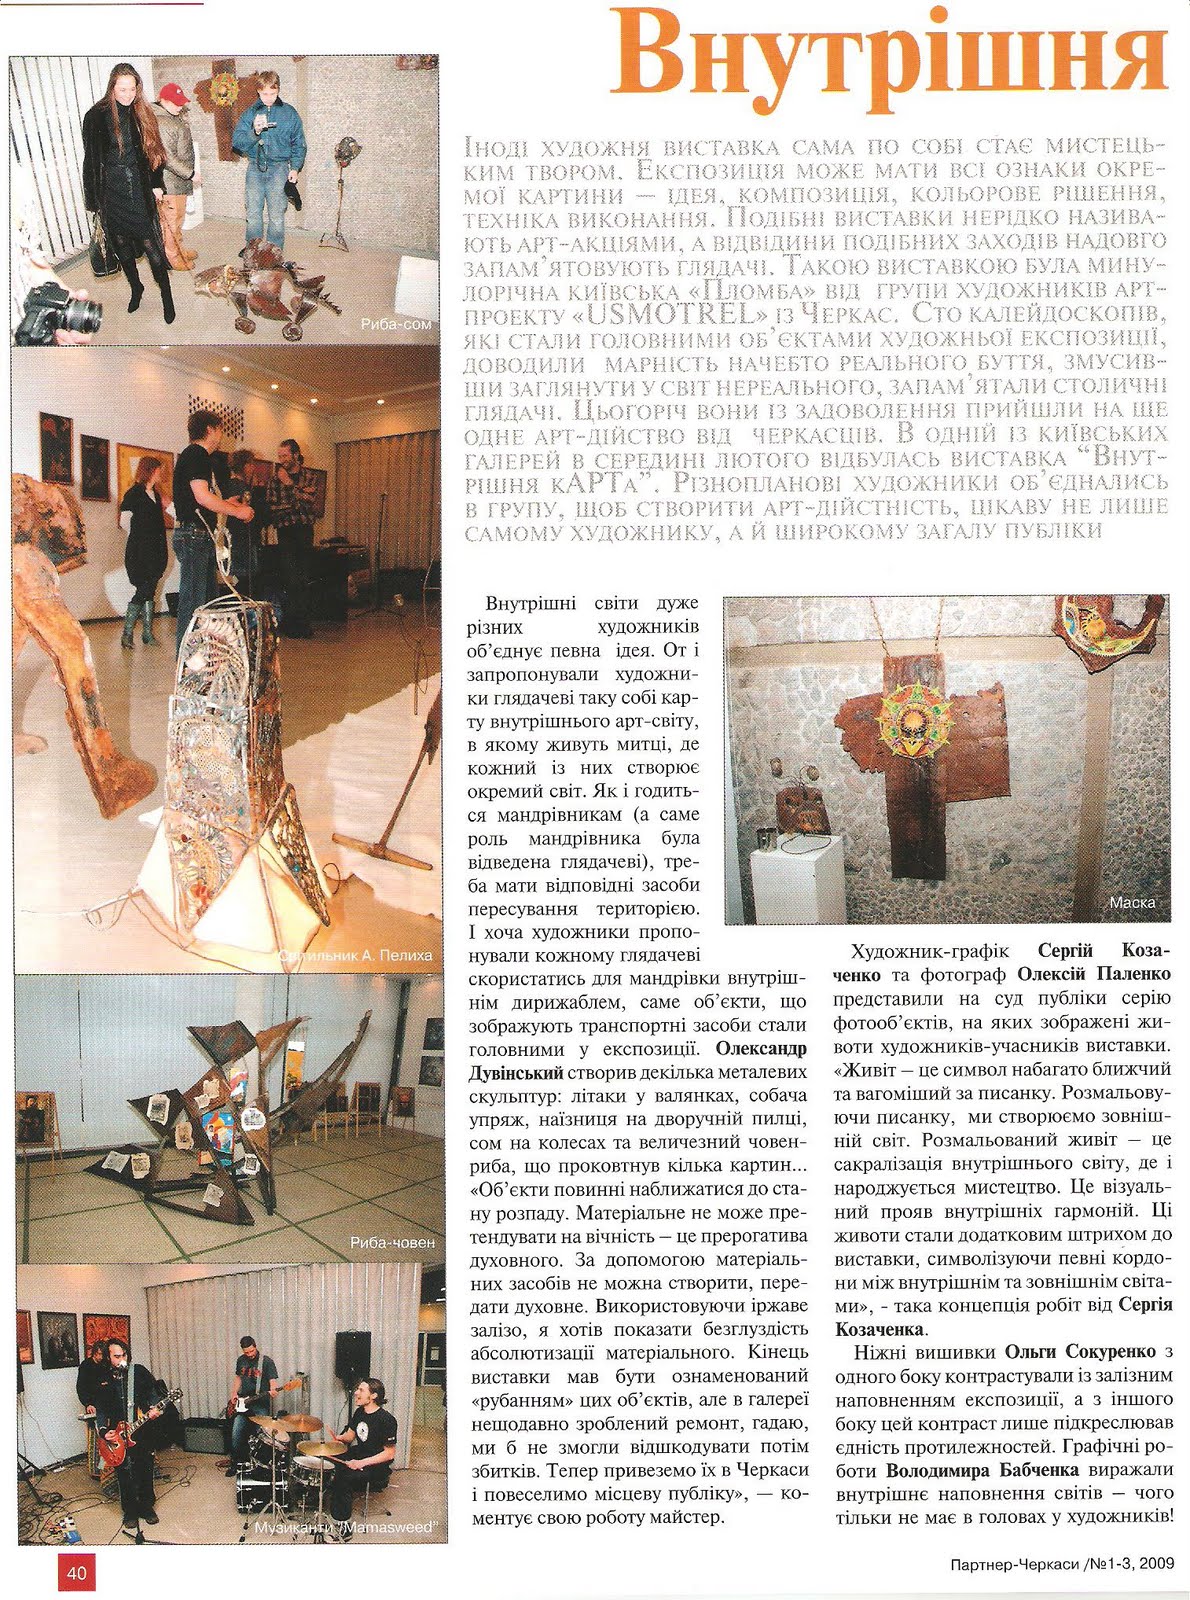 Journal Art Partner - Article about exhibition 'Internal kArt'